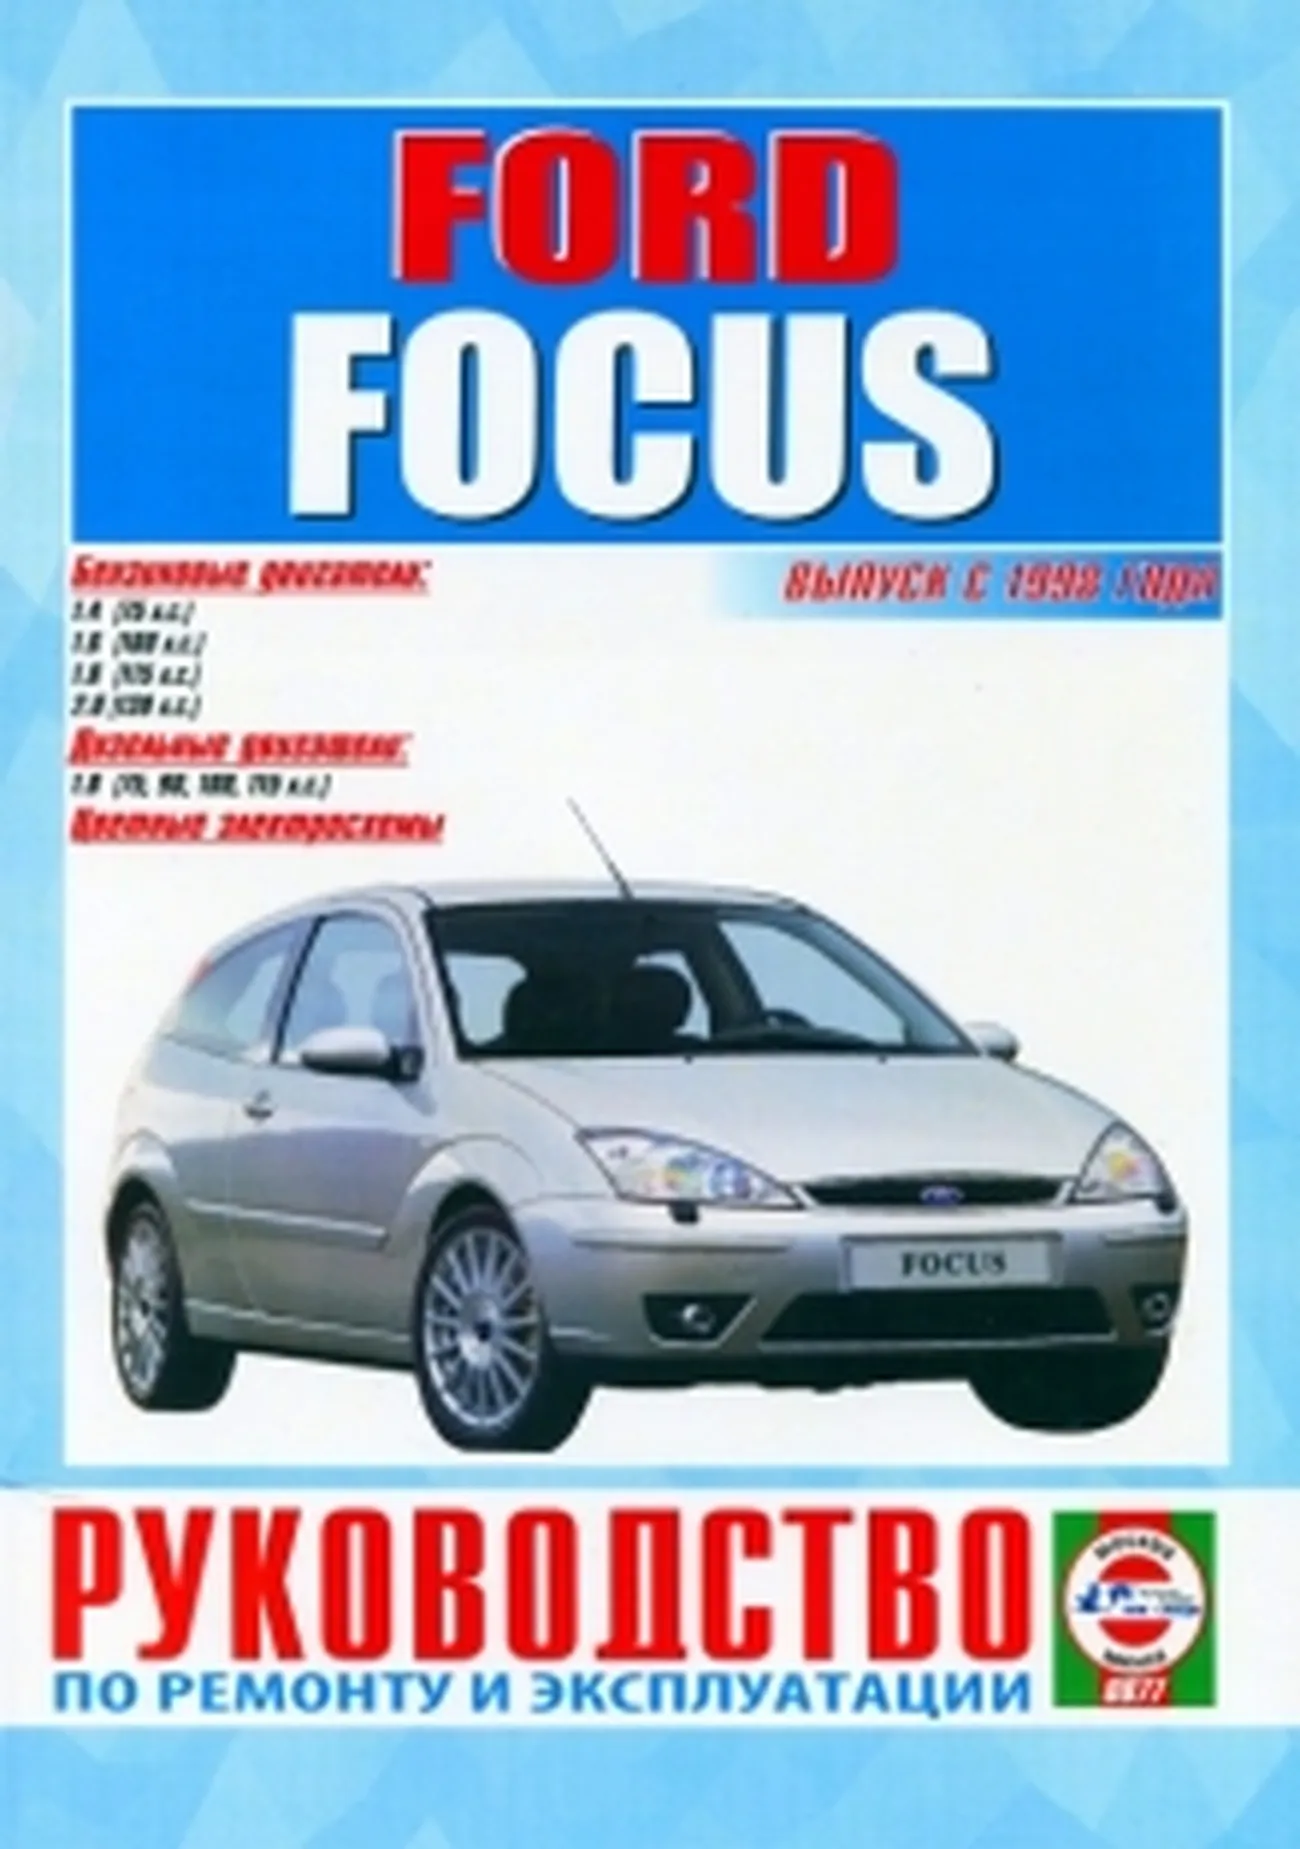 Книга: FORD FOCUS (б) с 1998 г.в., рем., экспл., то | Чижовка